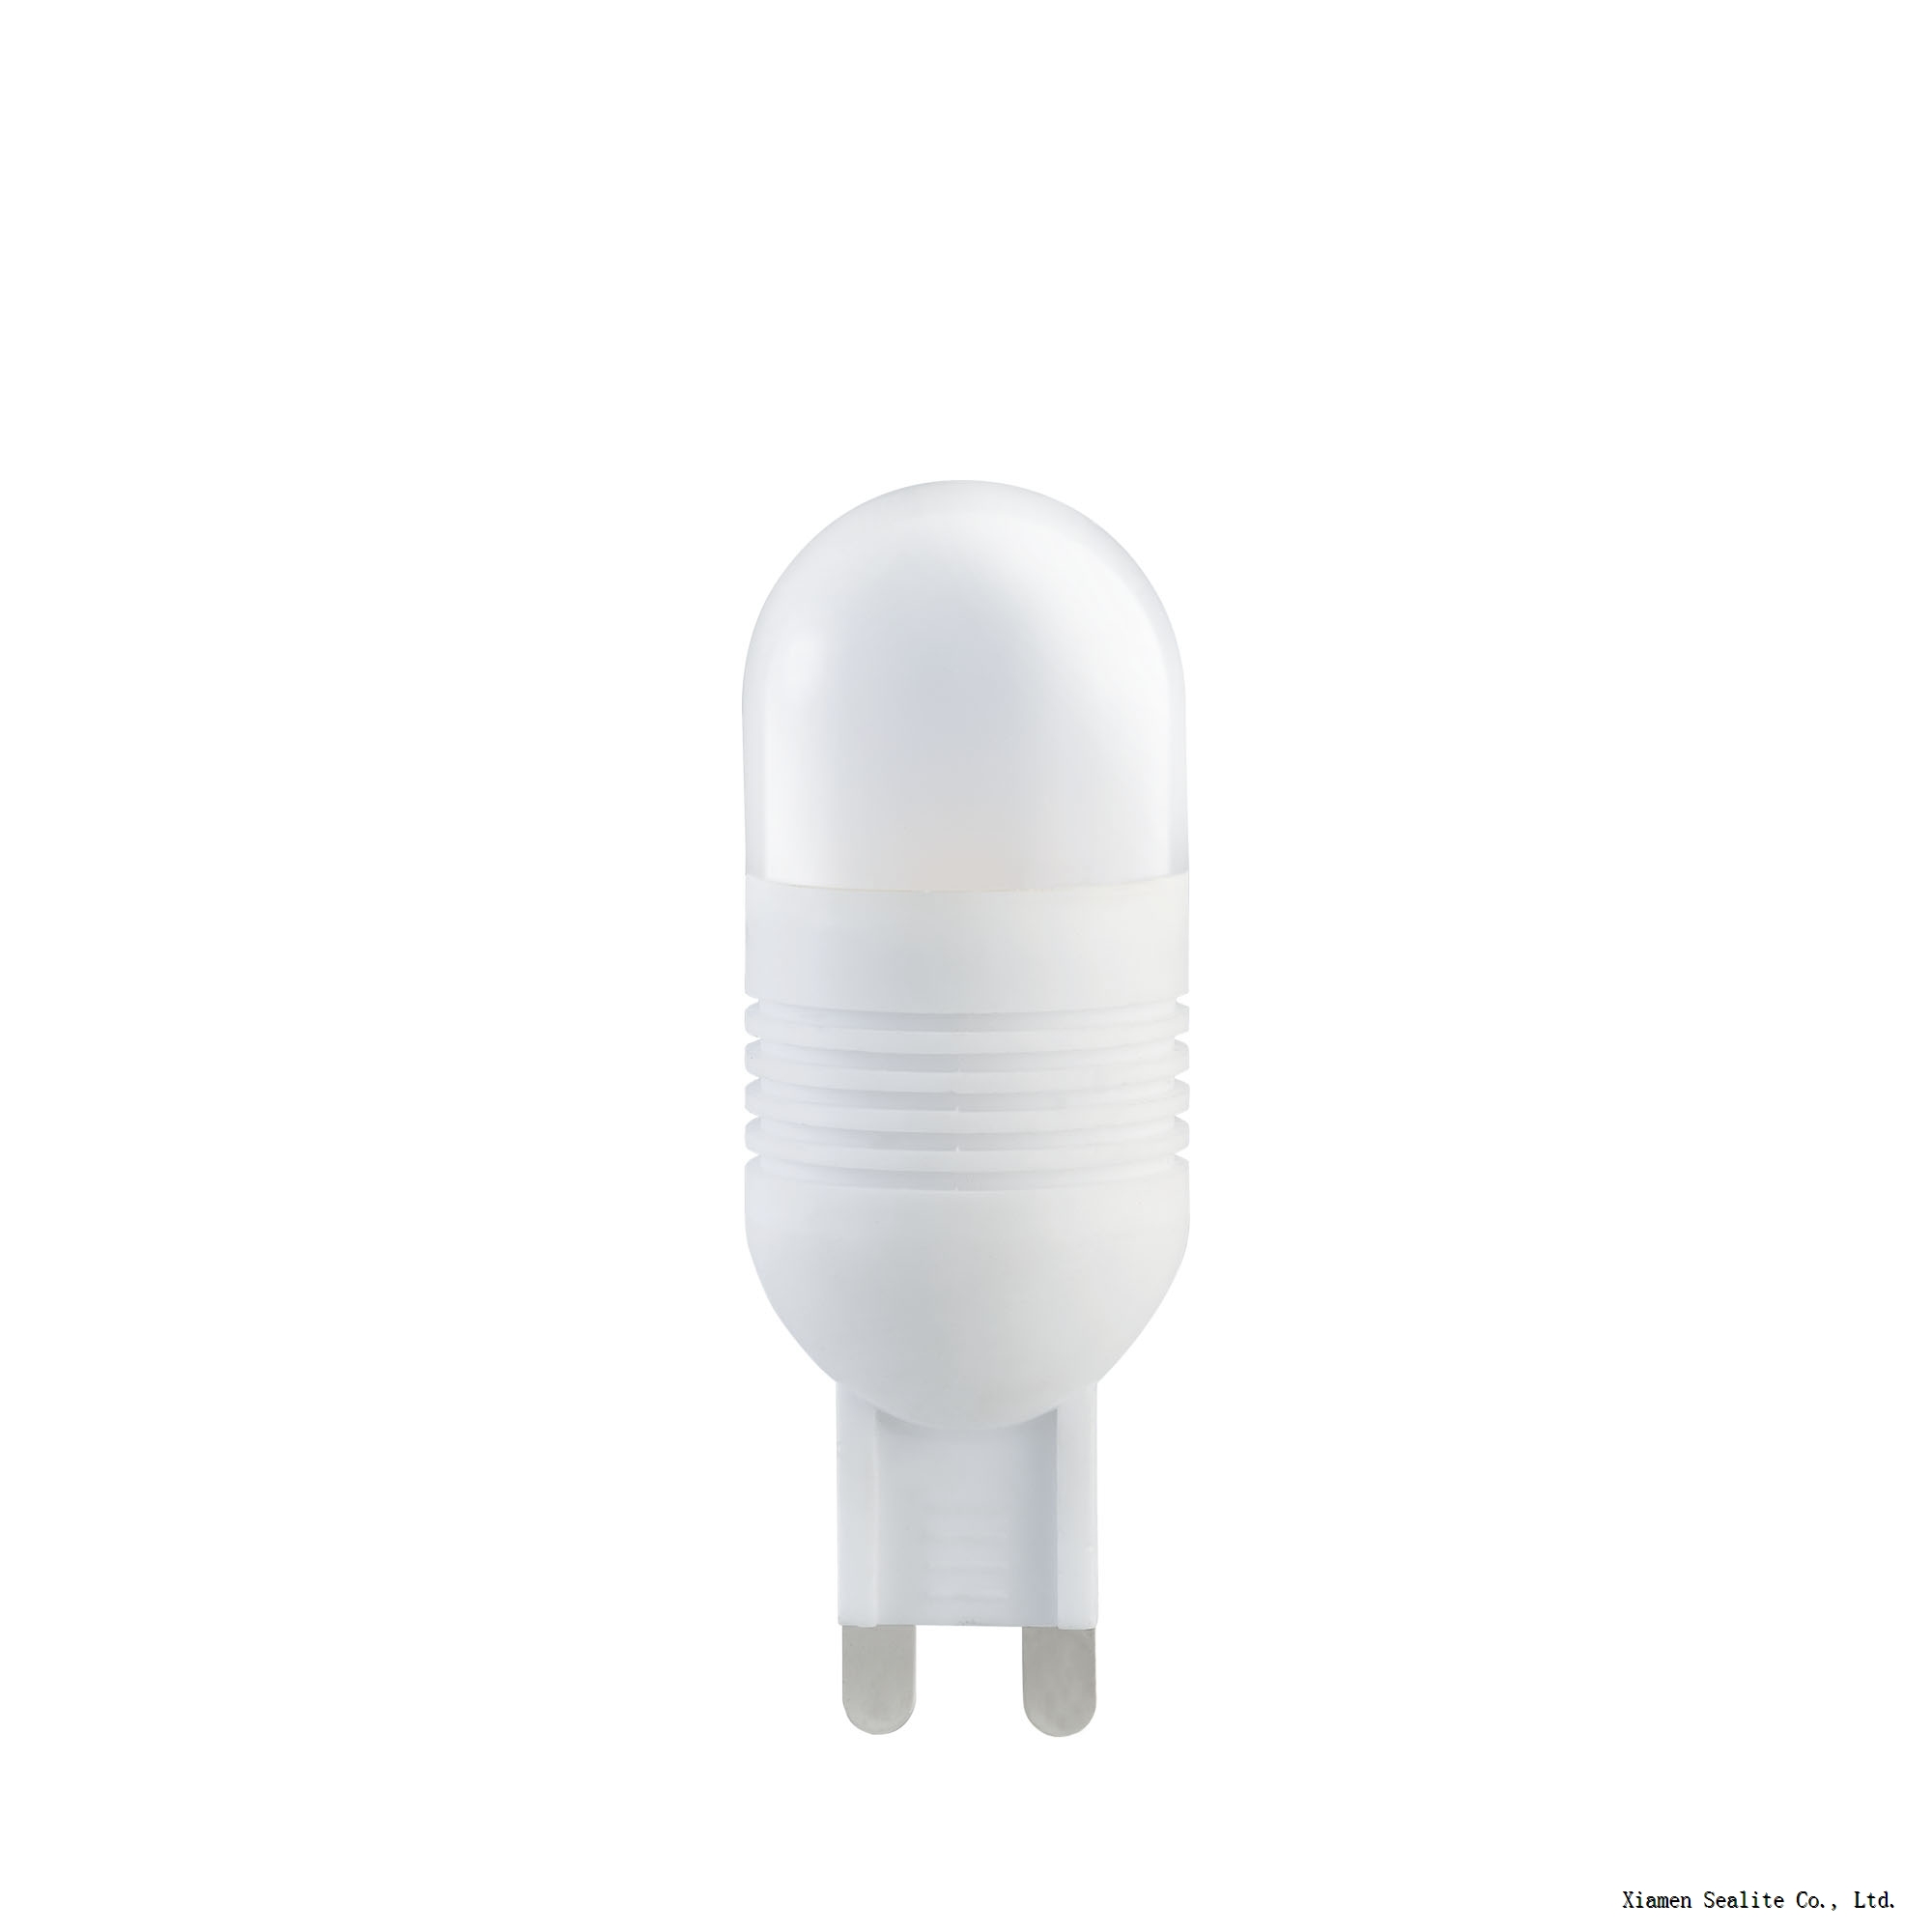 Super Bright LED Ceramic Bulb G9 4W for Home Lighting